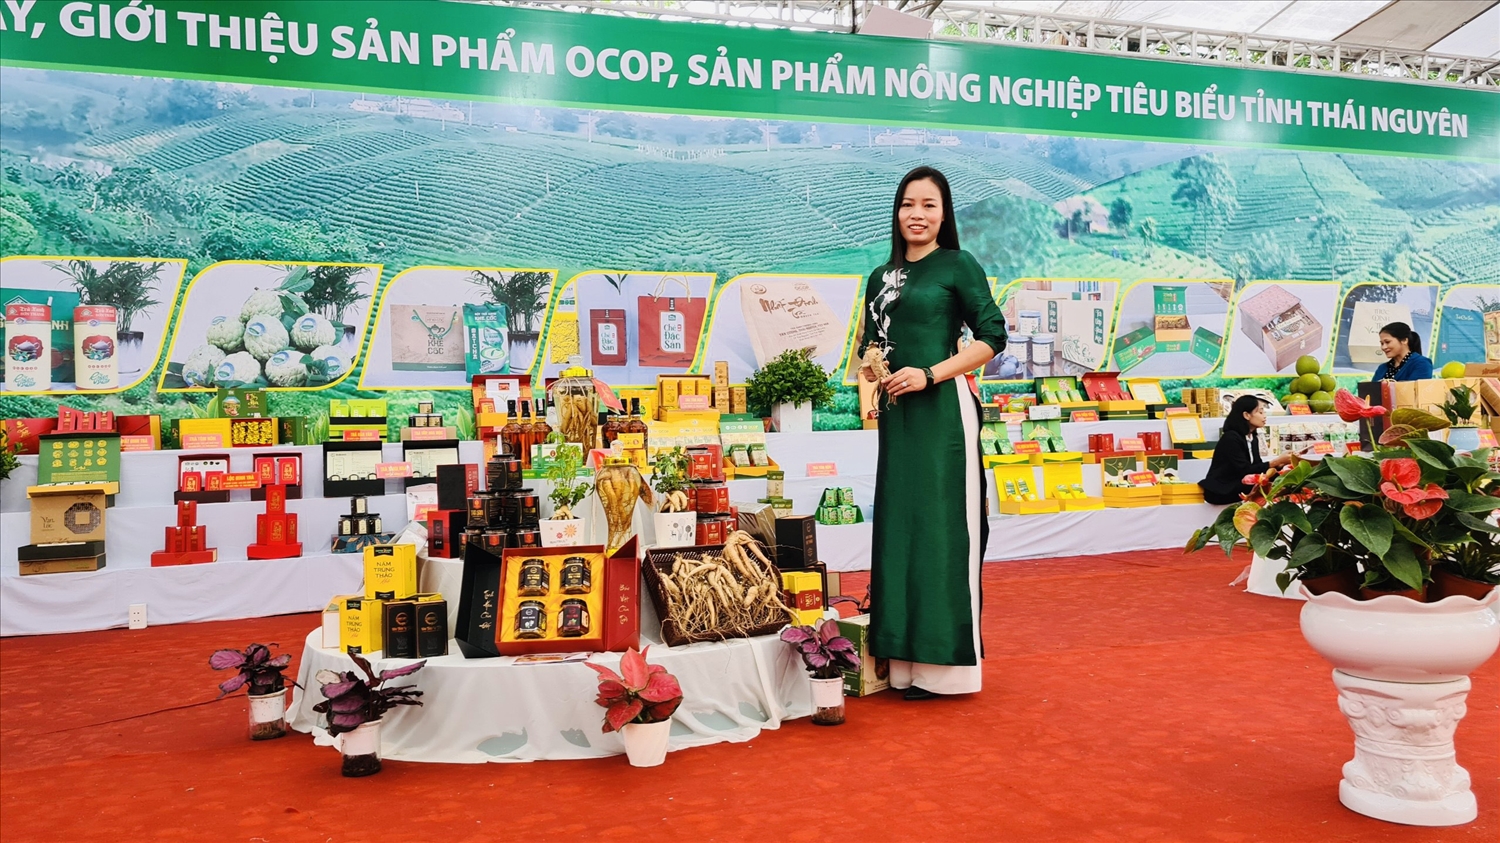 Chị Son Hằng bên các sản phẩm từ Sâm Bố Chính tại gian hàng trưng bày, giới thiệu sản phẩm OCOP, nông nghiệp tiêu biểu tỉnh Thái Nguyên.